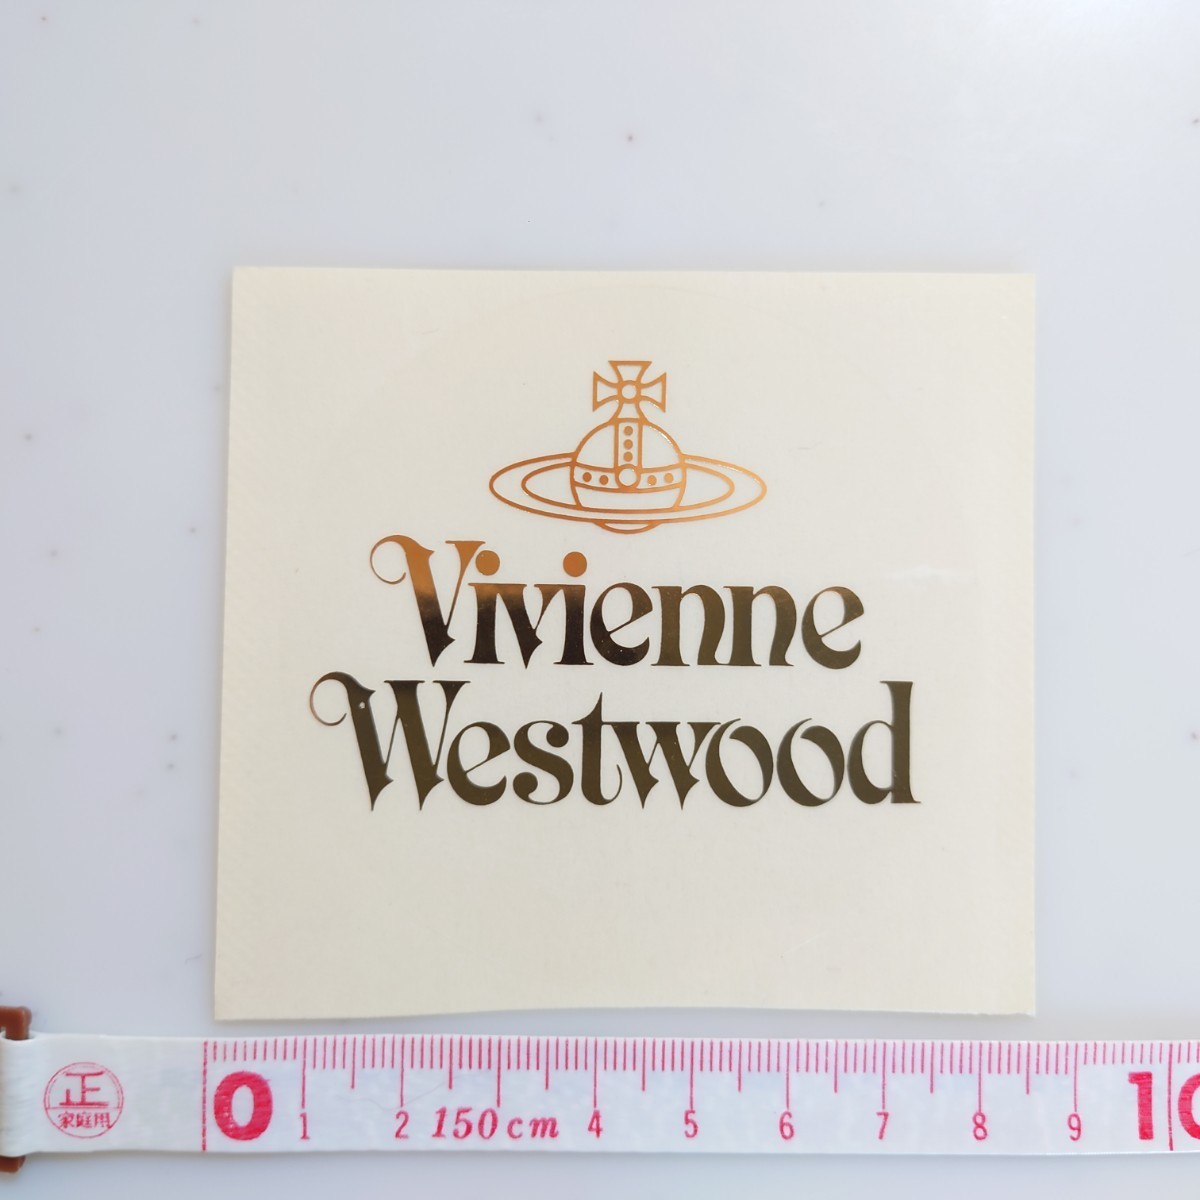 Vivienne Westwood ステッカー 送料無料!! 正規品 ヴィヴィアンウエストウッド ゴールド 非売品 円形 シール 金_画像1